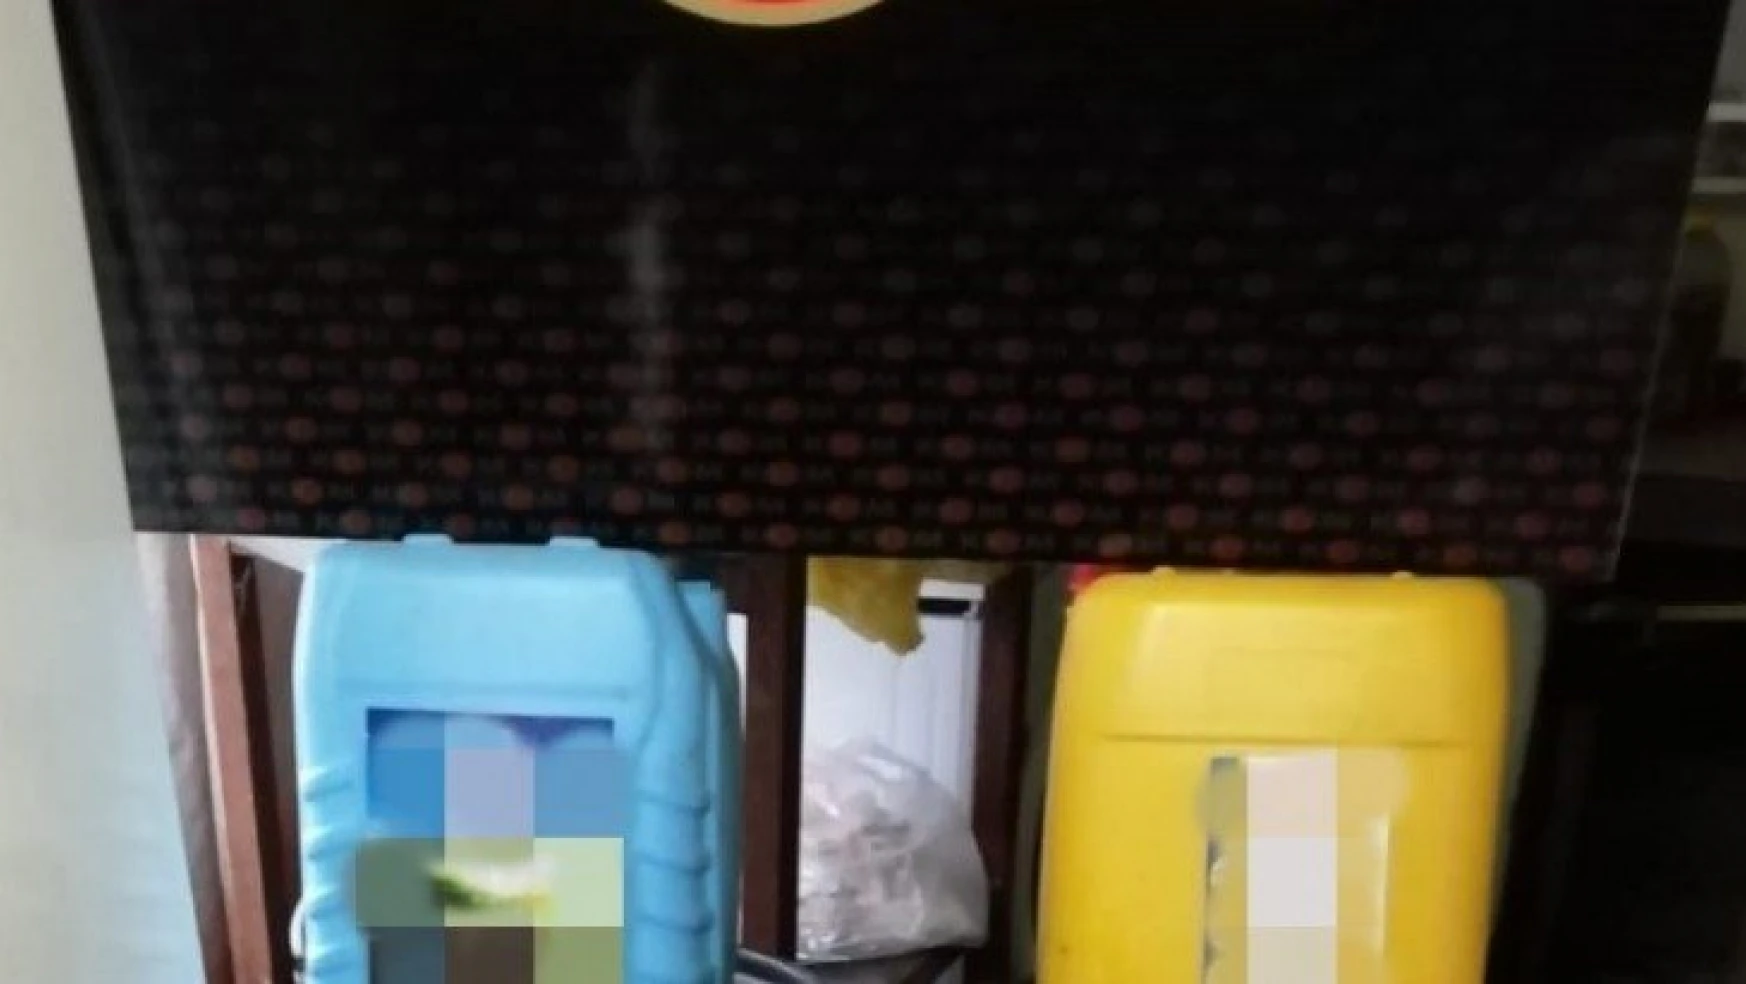 Malatya'da 400 litre kaçak içki ele geçirildi